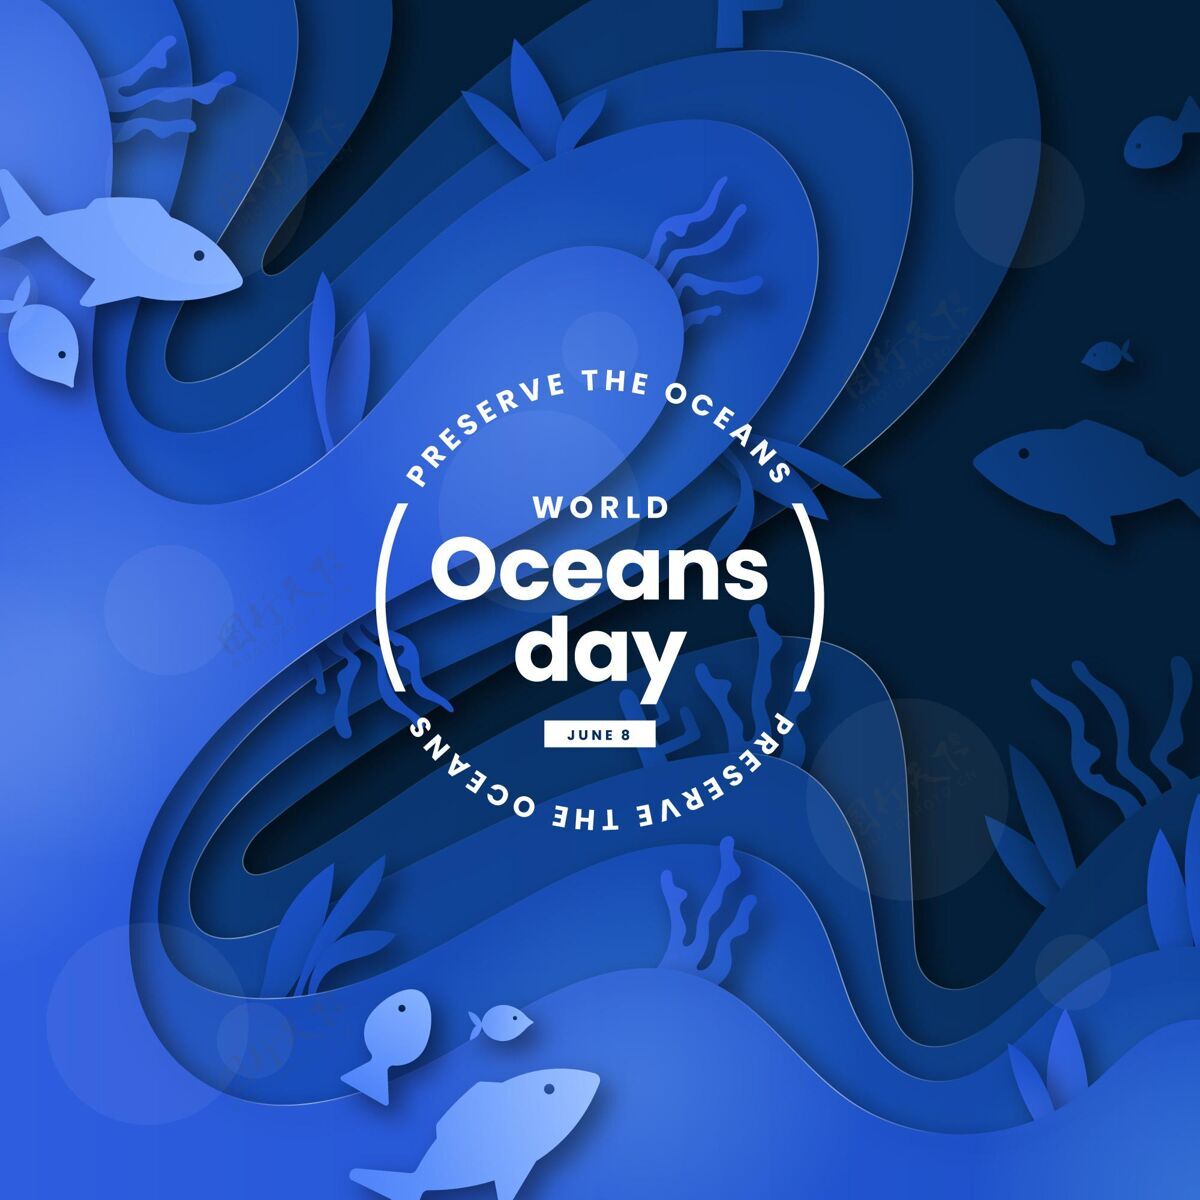 全球世界海洋日纸制插图纸张风格庆典环境